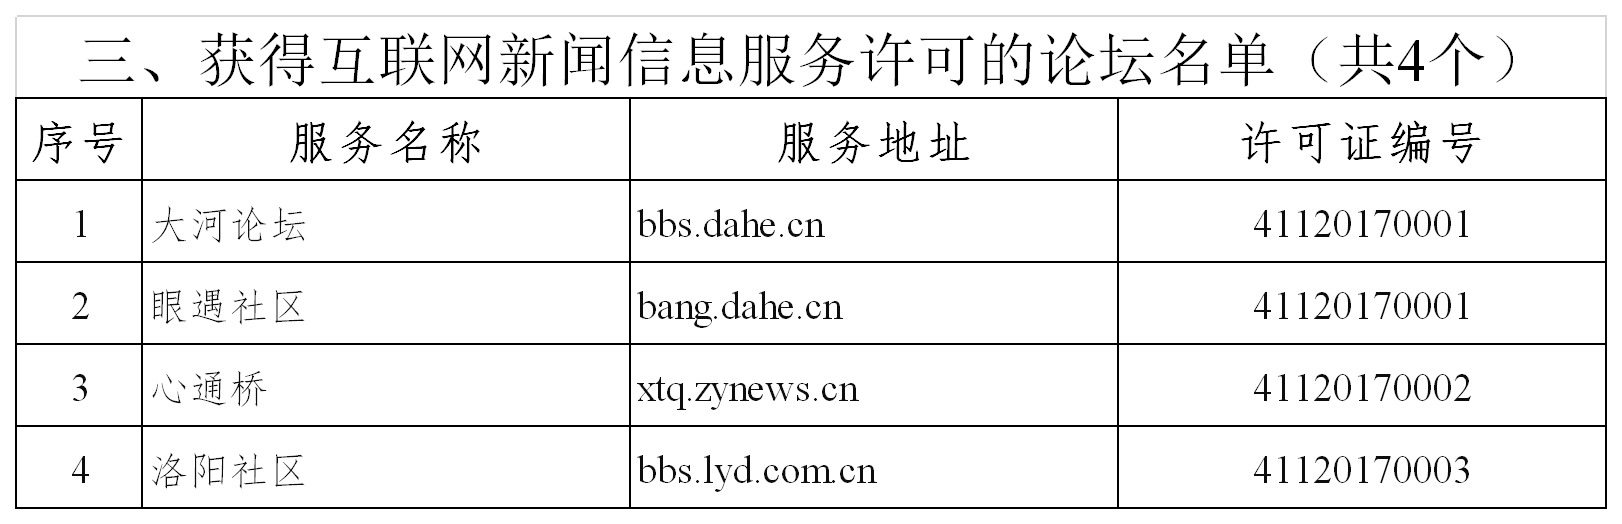 互联网新闻信息服务许可信息表（截至2020年9月11日）论坛.png